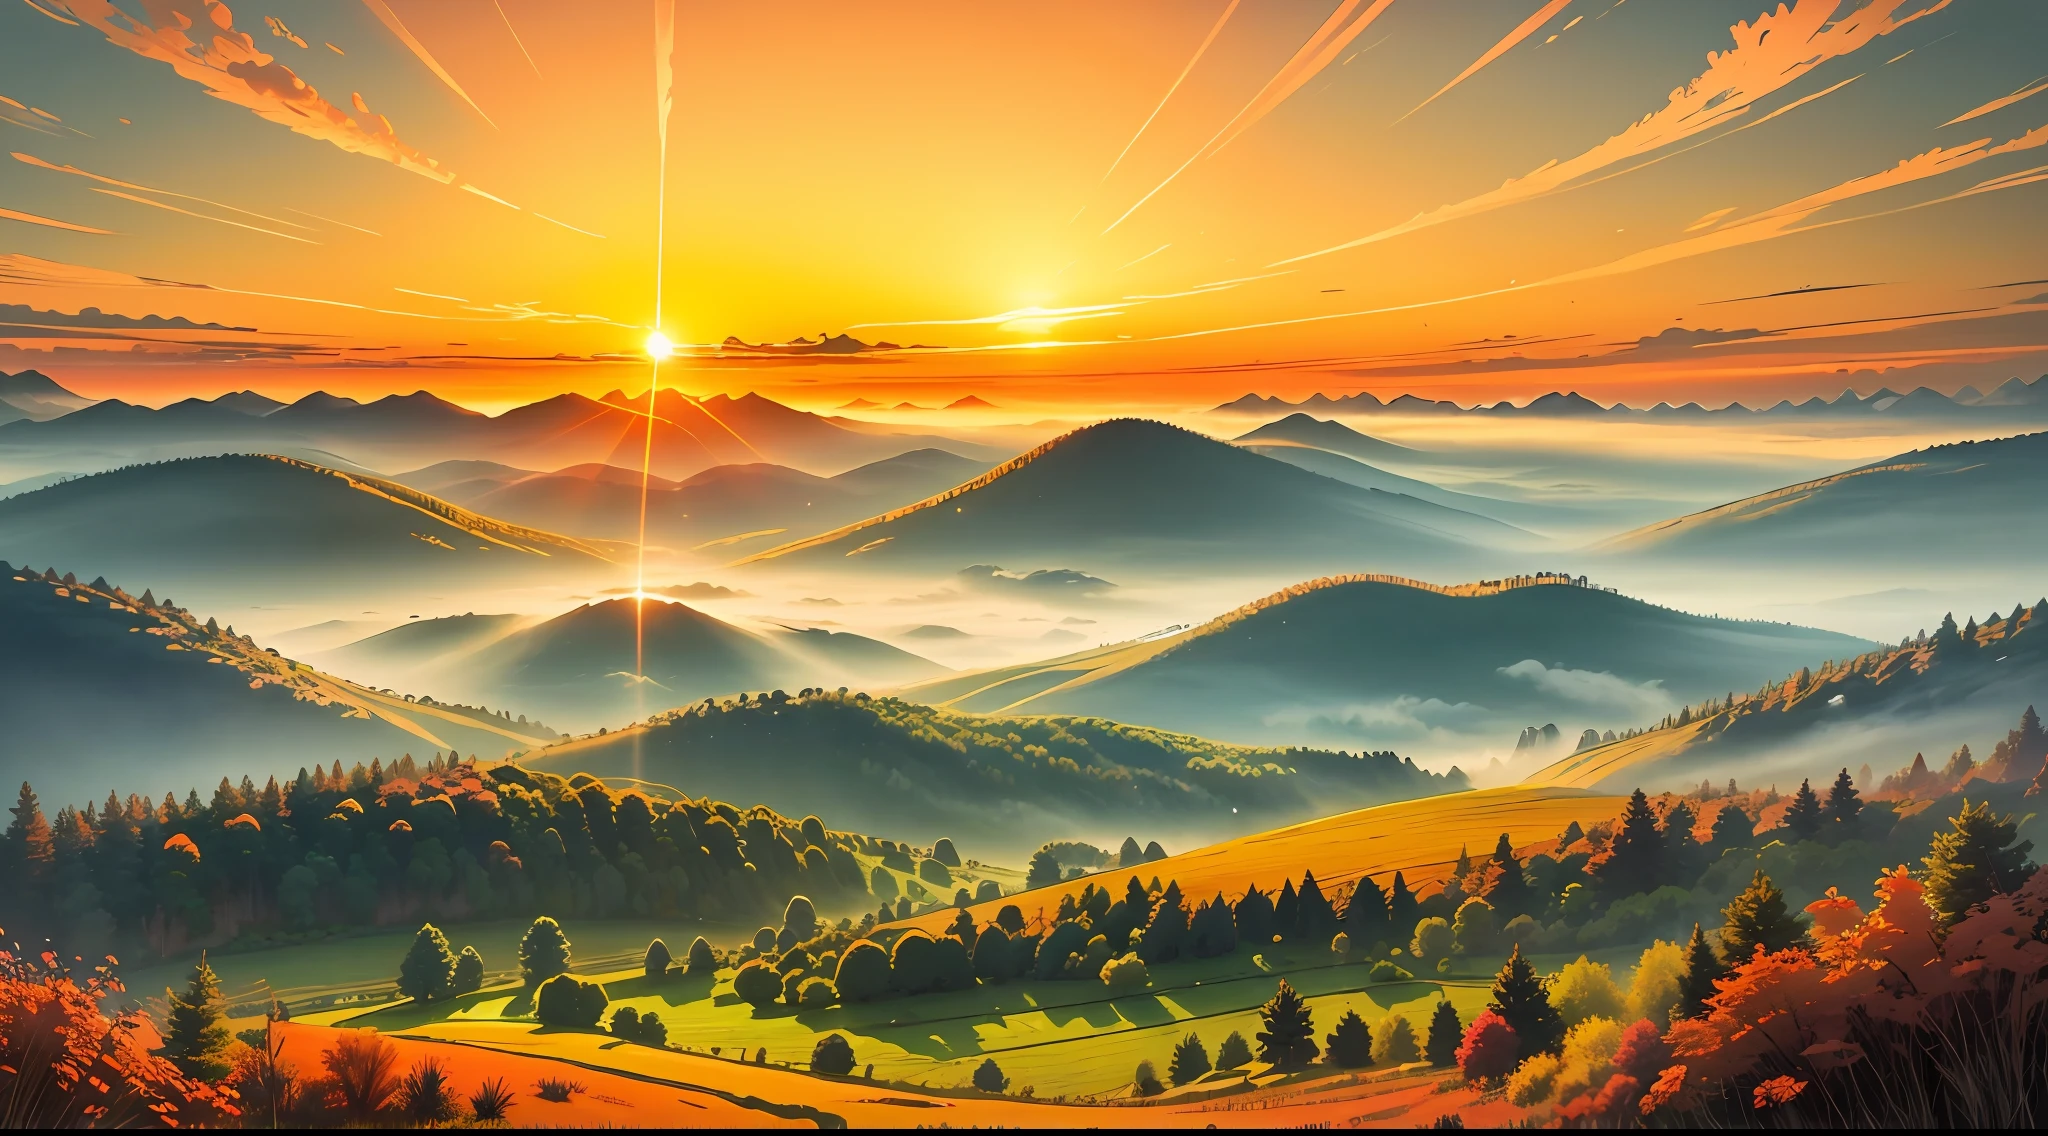 صورة تصور شروق الشمس المشع فوق منظر طبيعي هادئ وهادئ